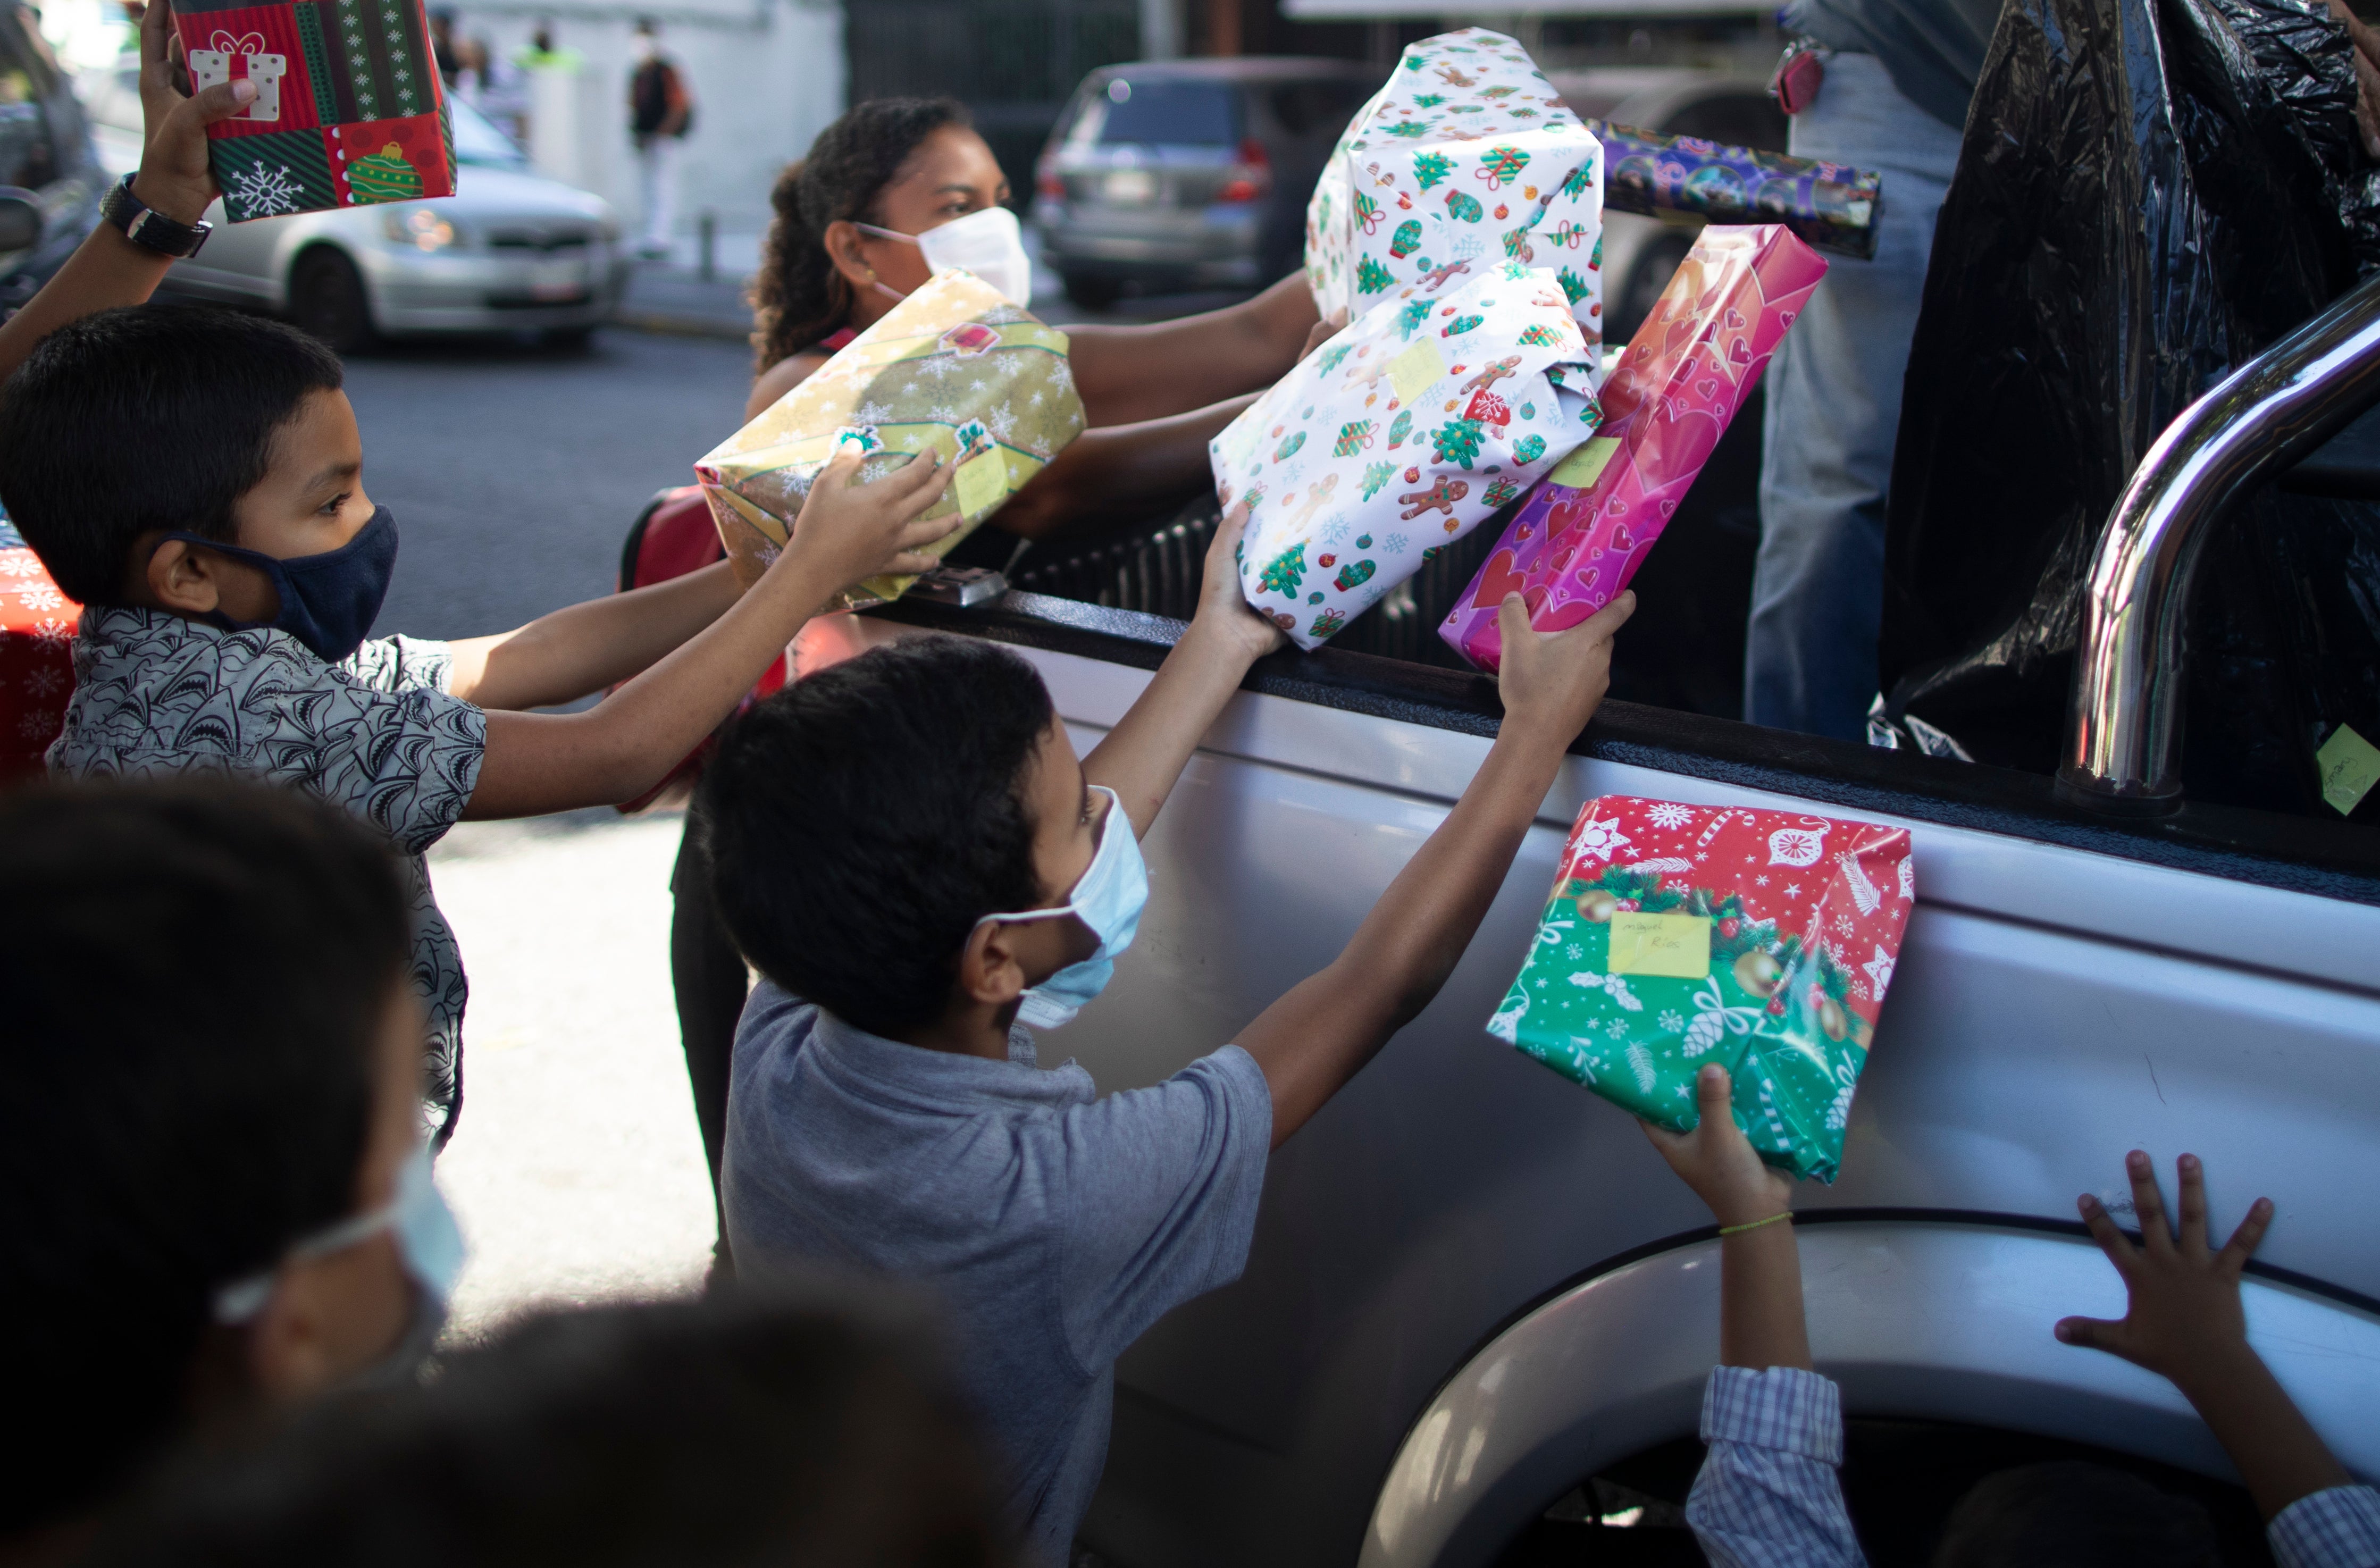 La donación de juguetes, alimentos y ropa durante las fiestas navideñas son tradicionales en Venezuela